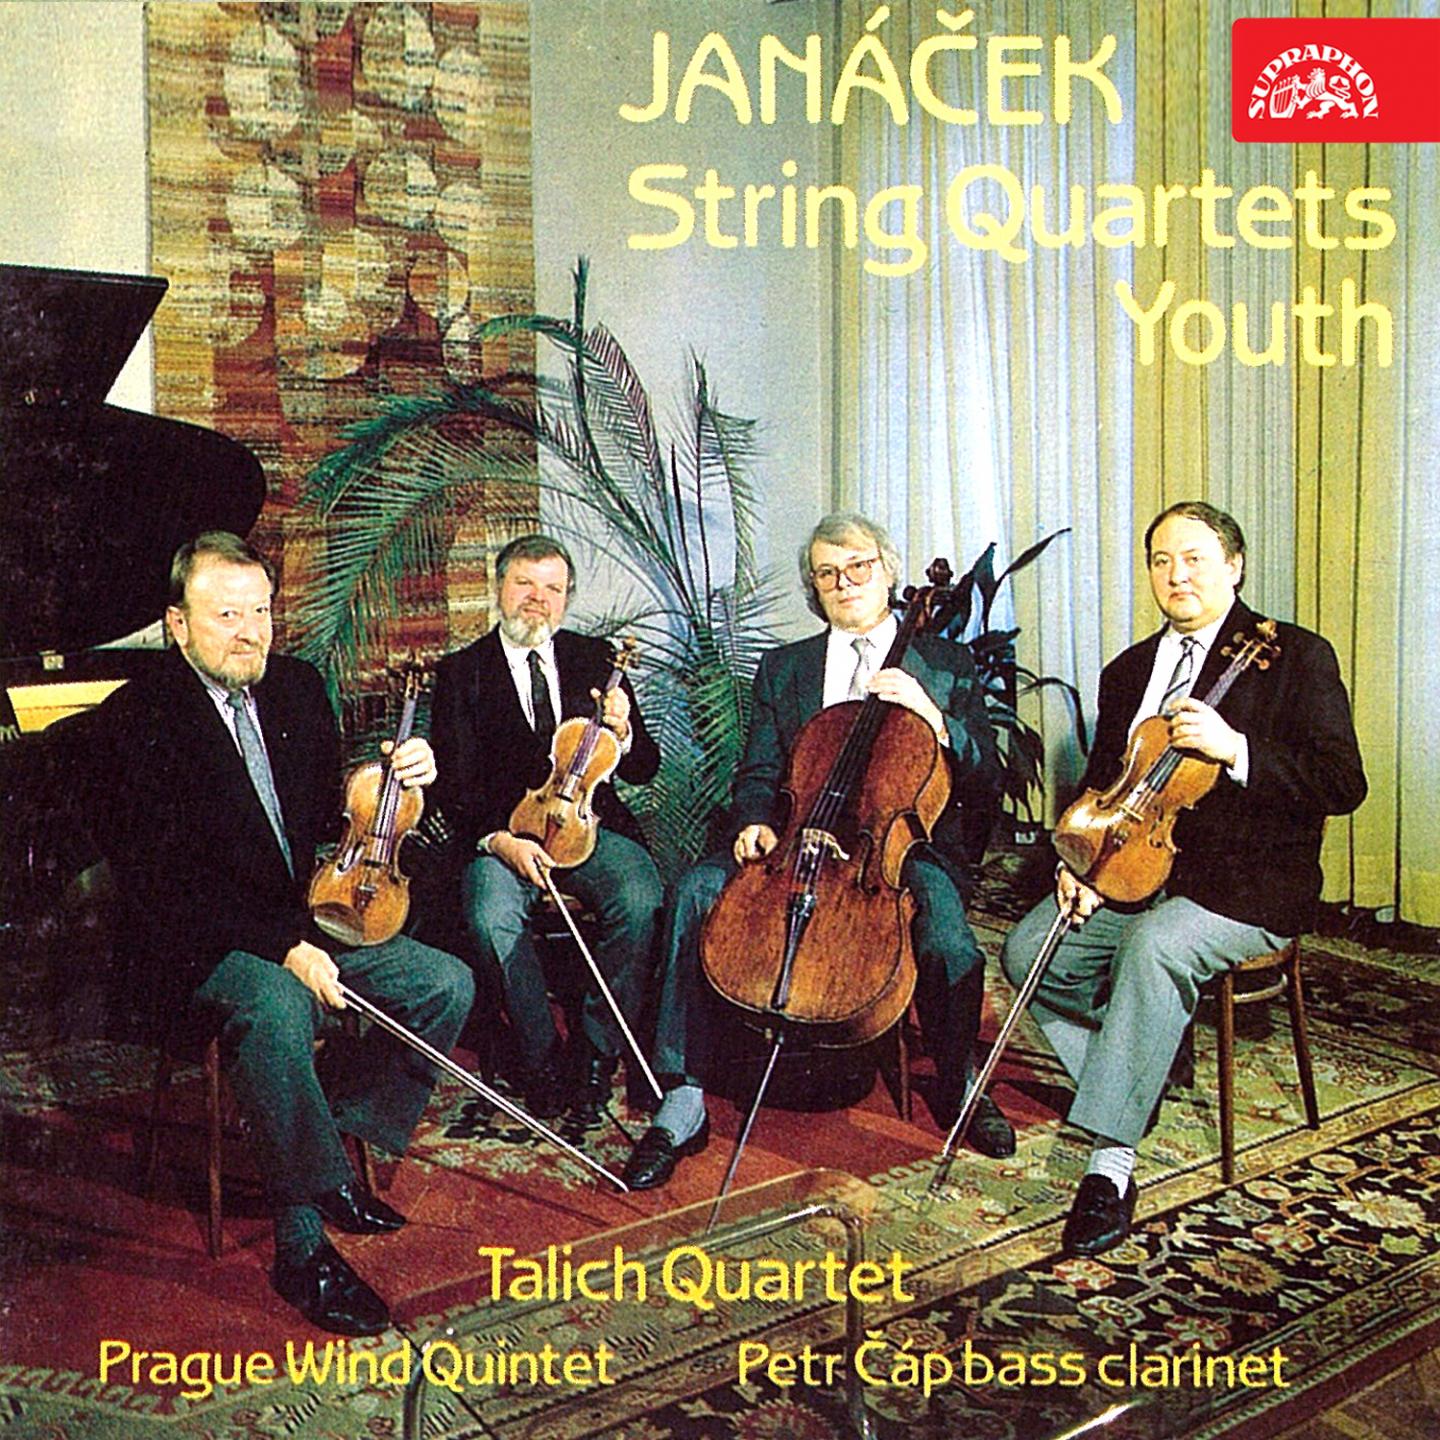 Jana ek: String Quartets, Youth